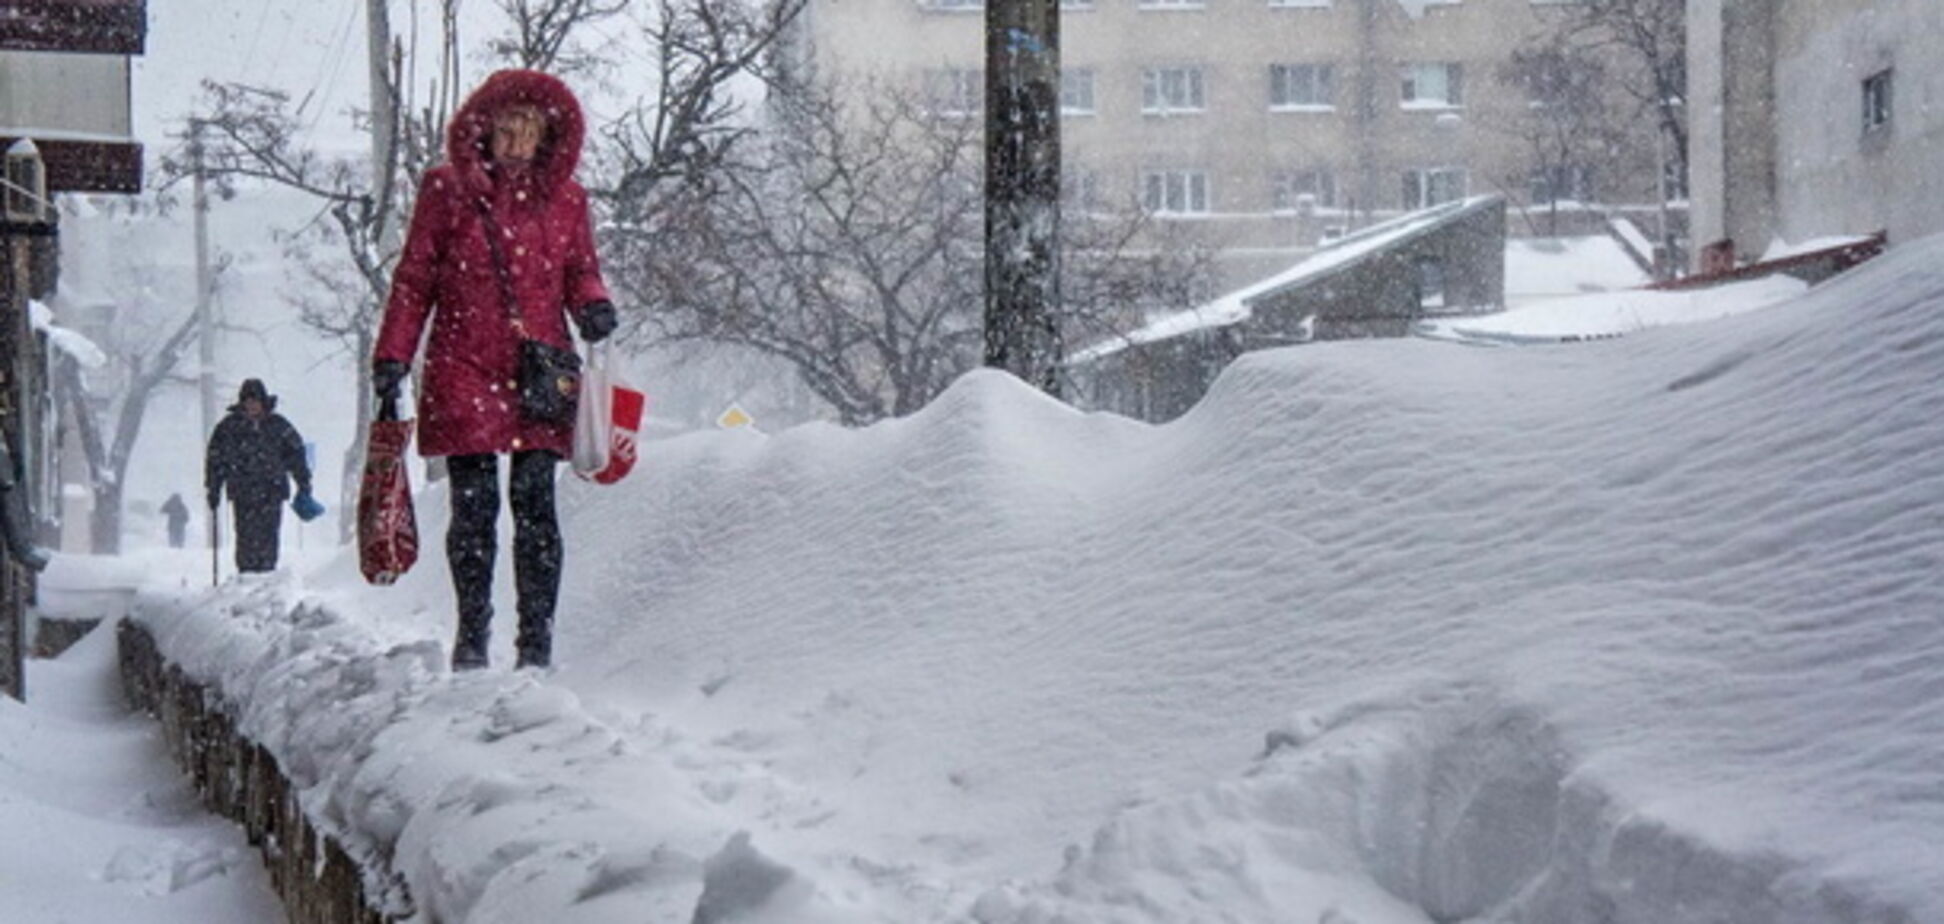 Украину засыплет снегом: синоптики уточнили прогноз погоды на неделю